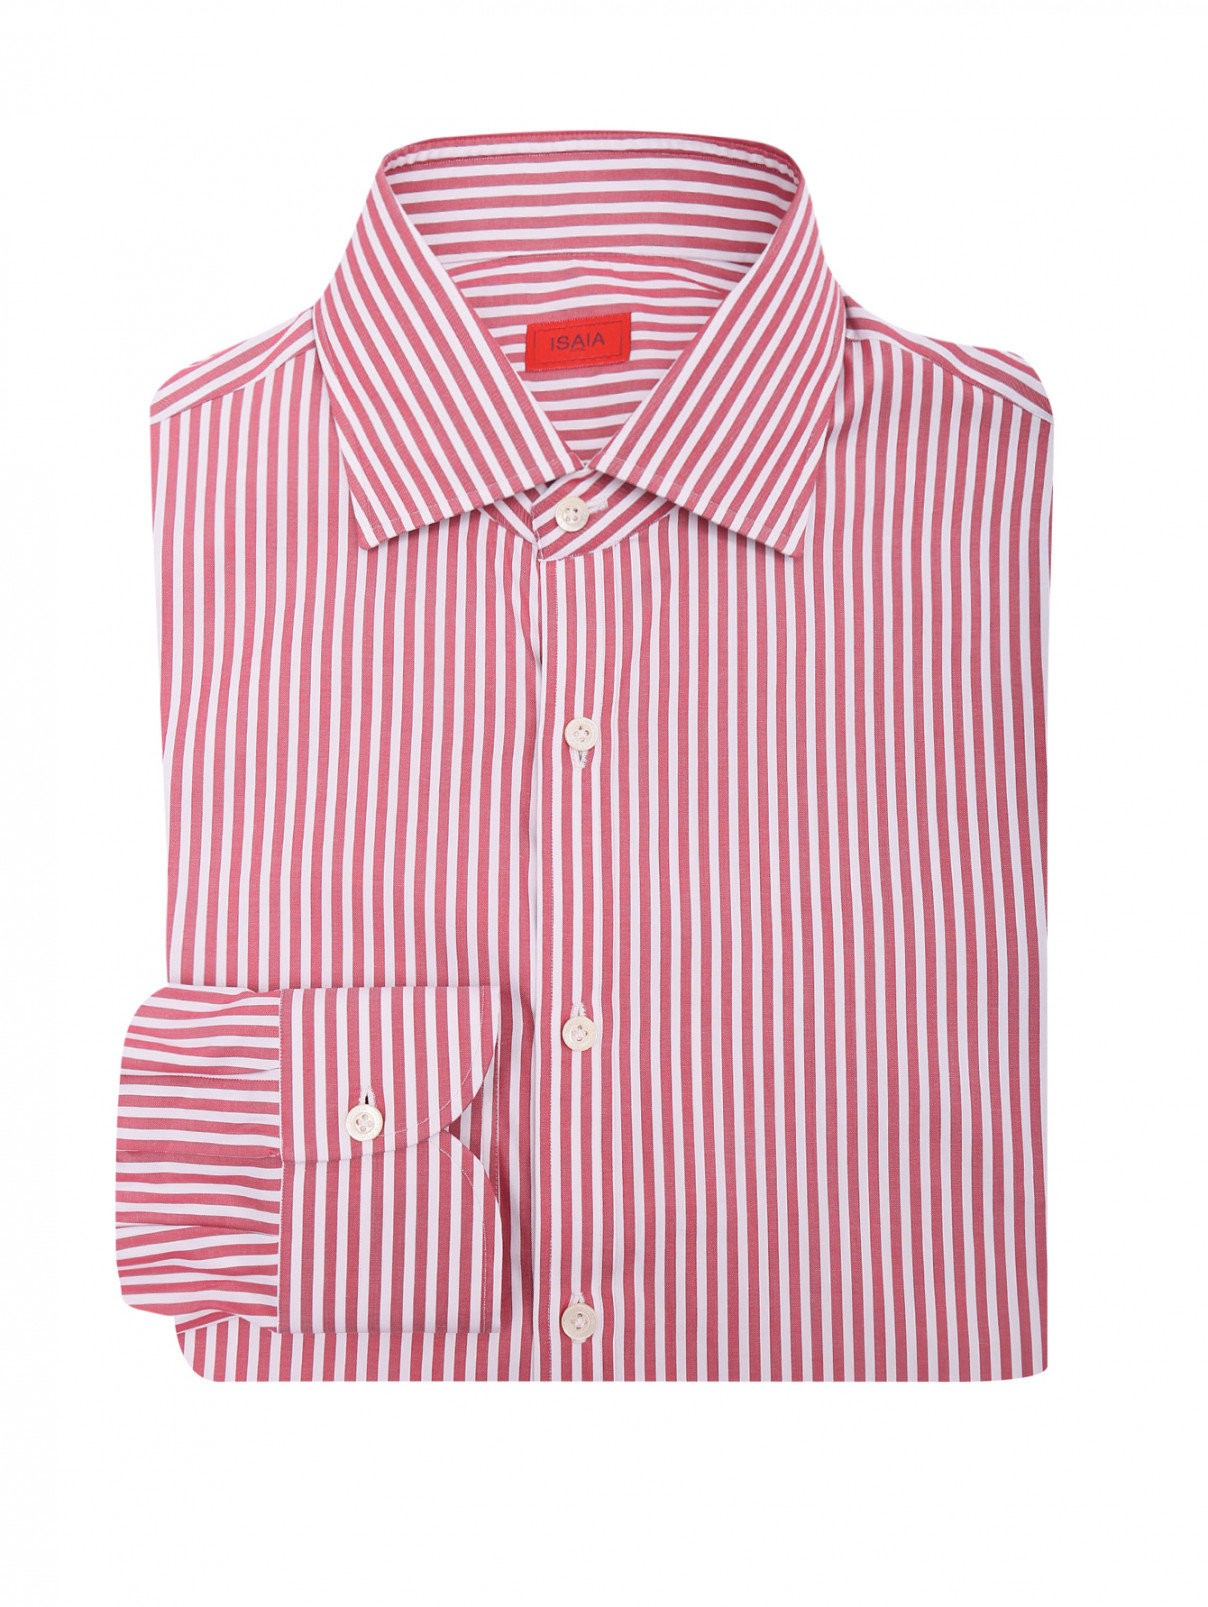 Рубашка из хлопка с узором полоска Isaia  –  Общий вид  – Цвет:  Красный